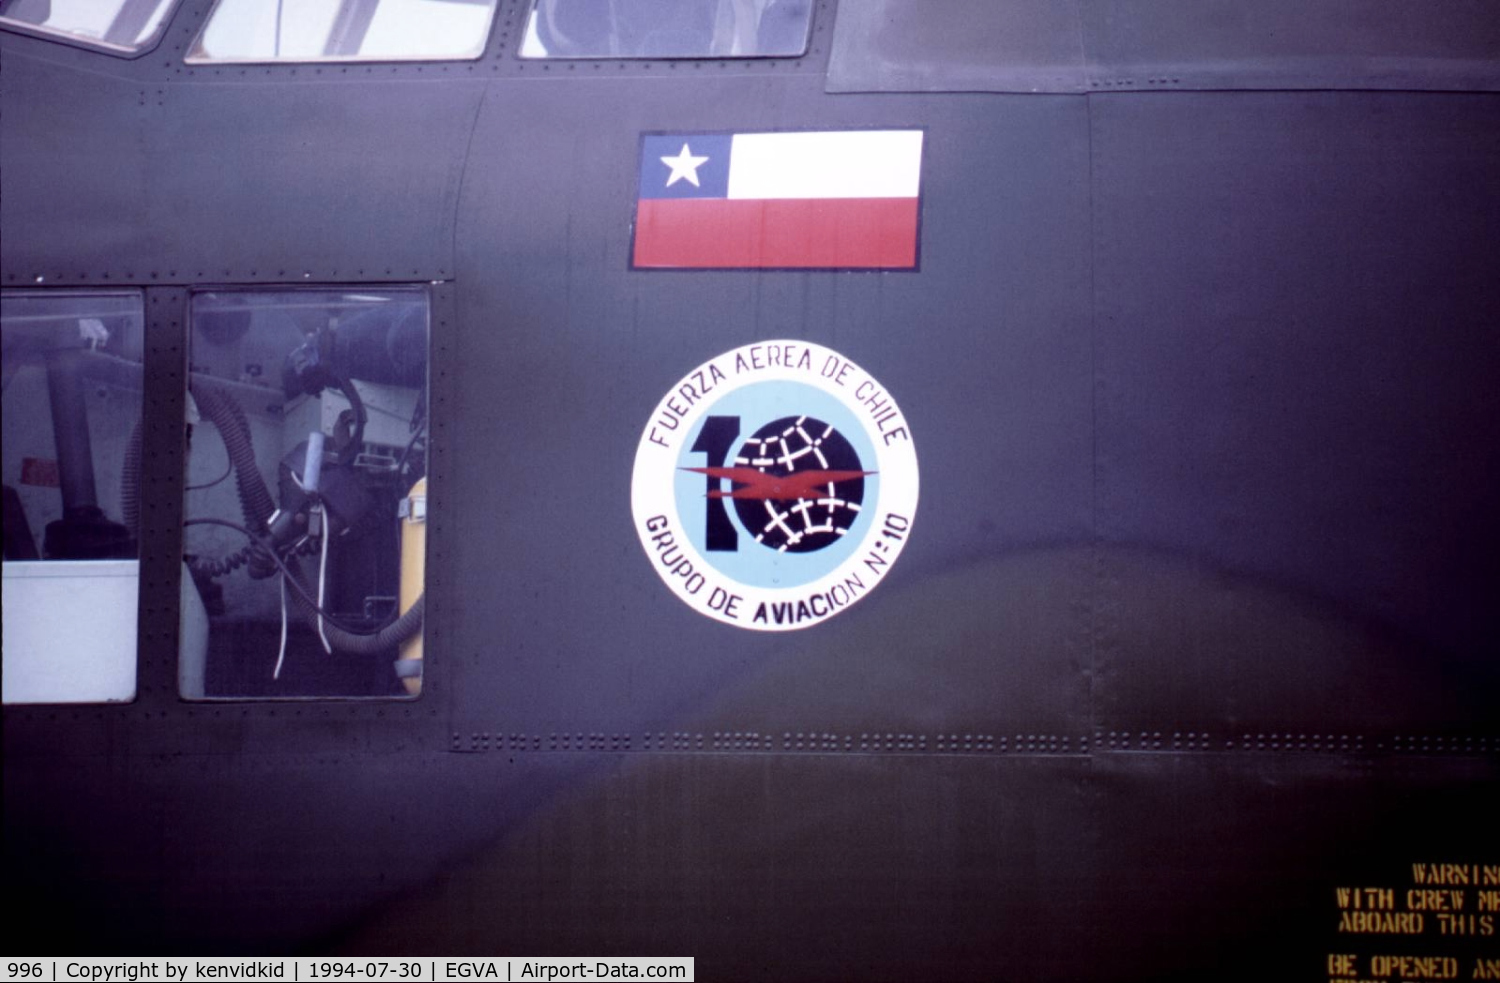 996, 1972 Lockheed C-130H Hercules C/N 382-4496, Chilean badge detail.